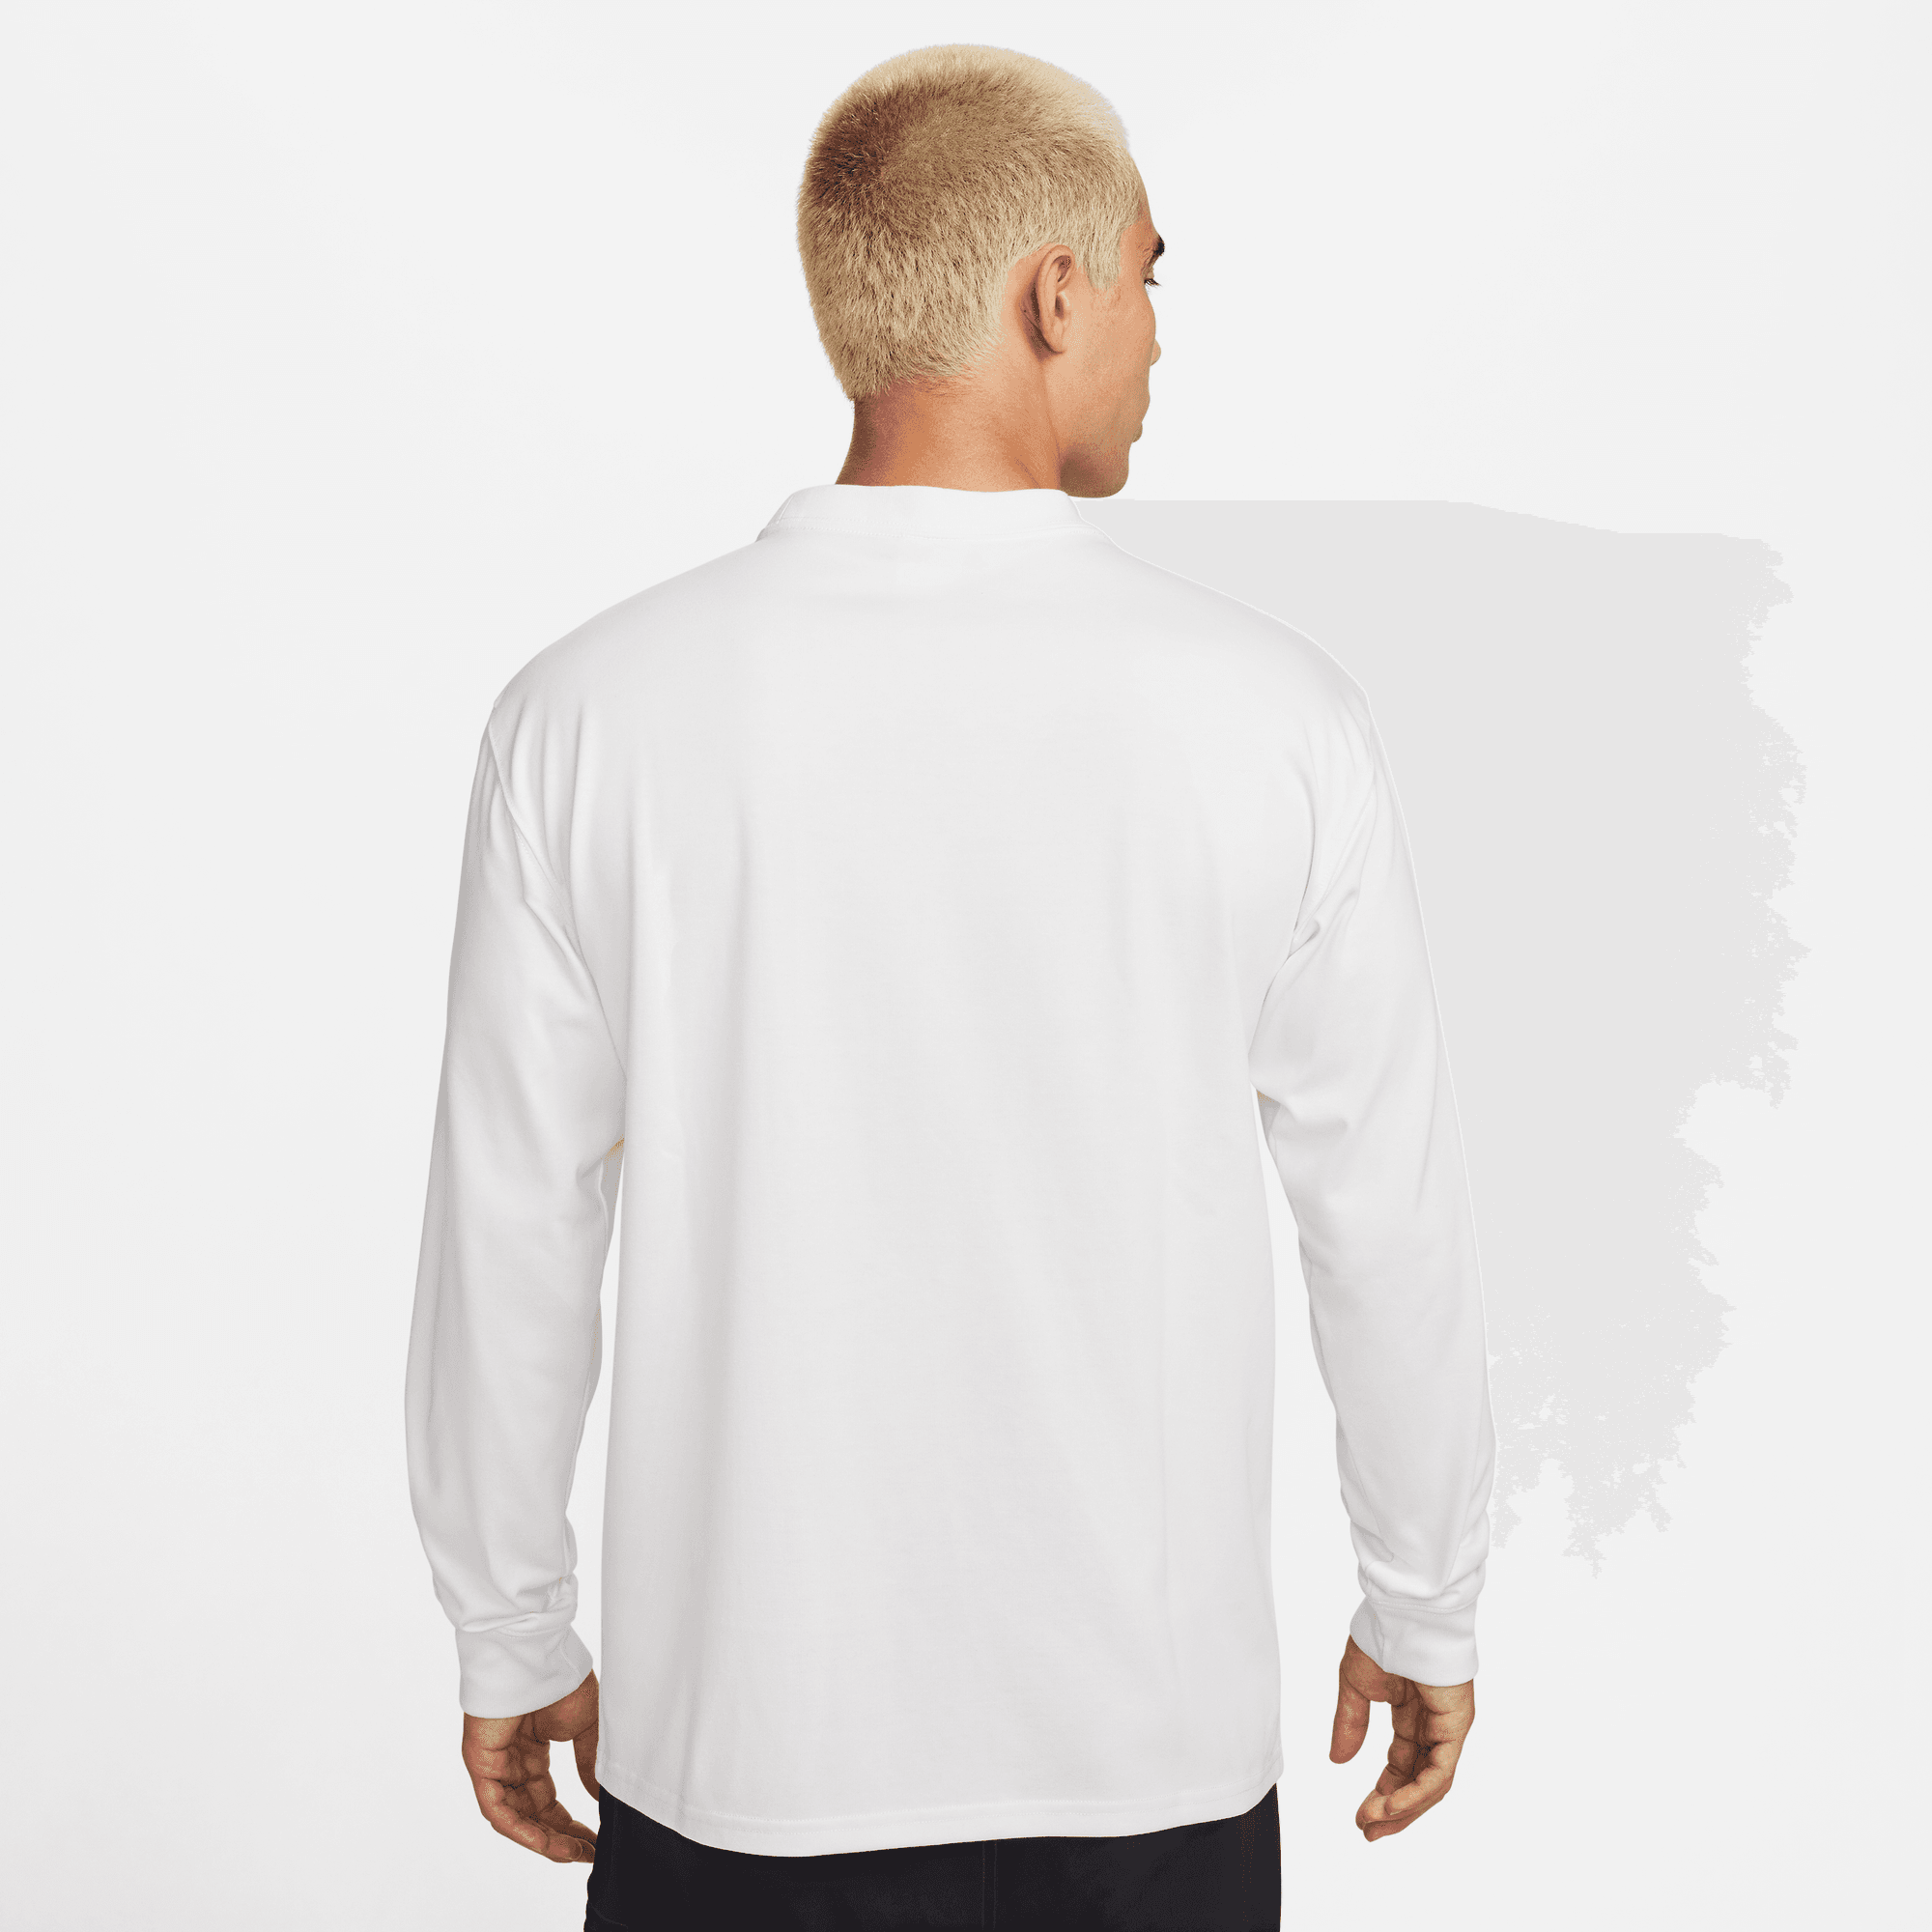 Nike ACG Lungs Men's Long-Sleeve T-Shirt.